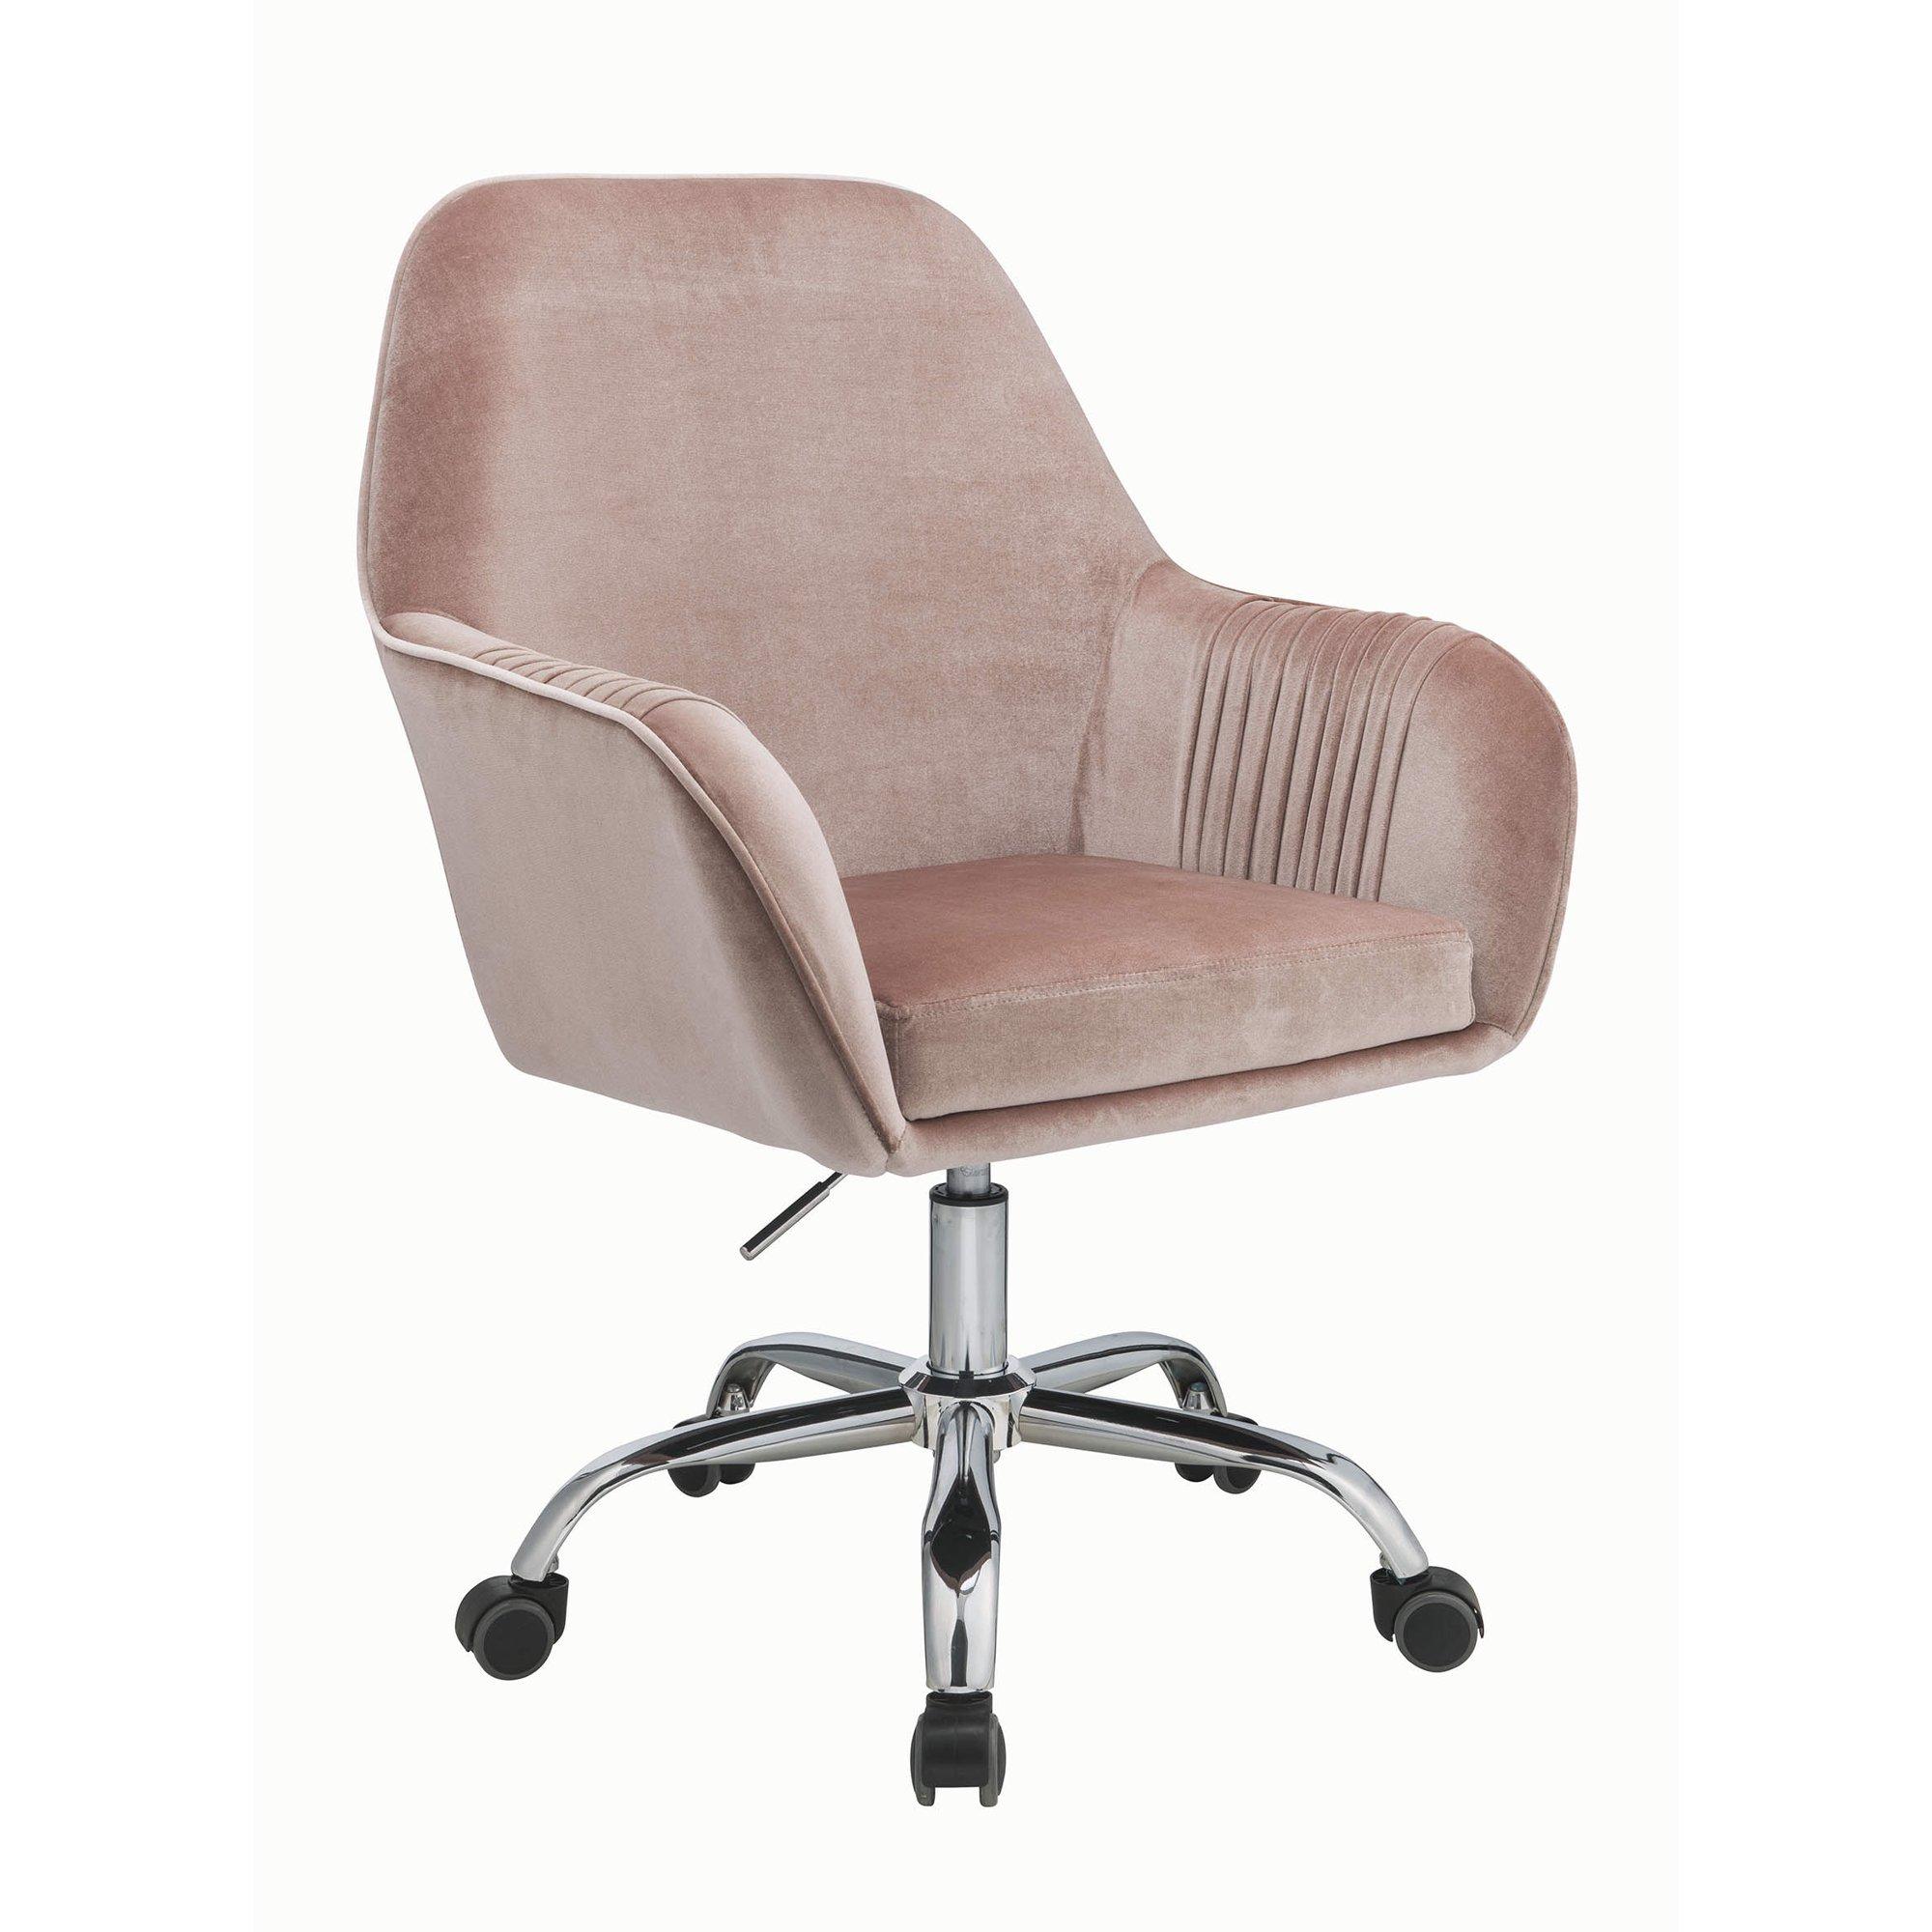 Modern, Classic Home Office Chair Eimer 92504 in Peach Velvet